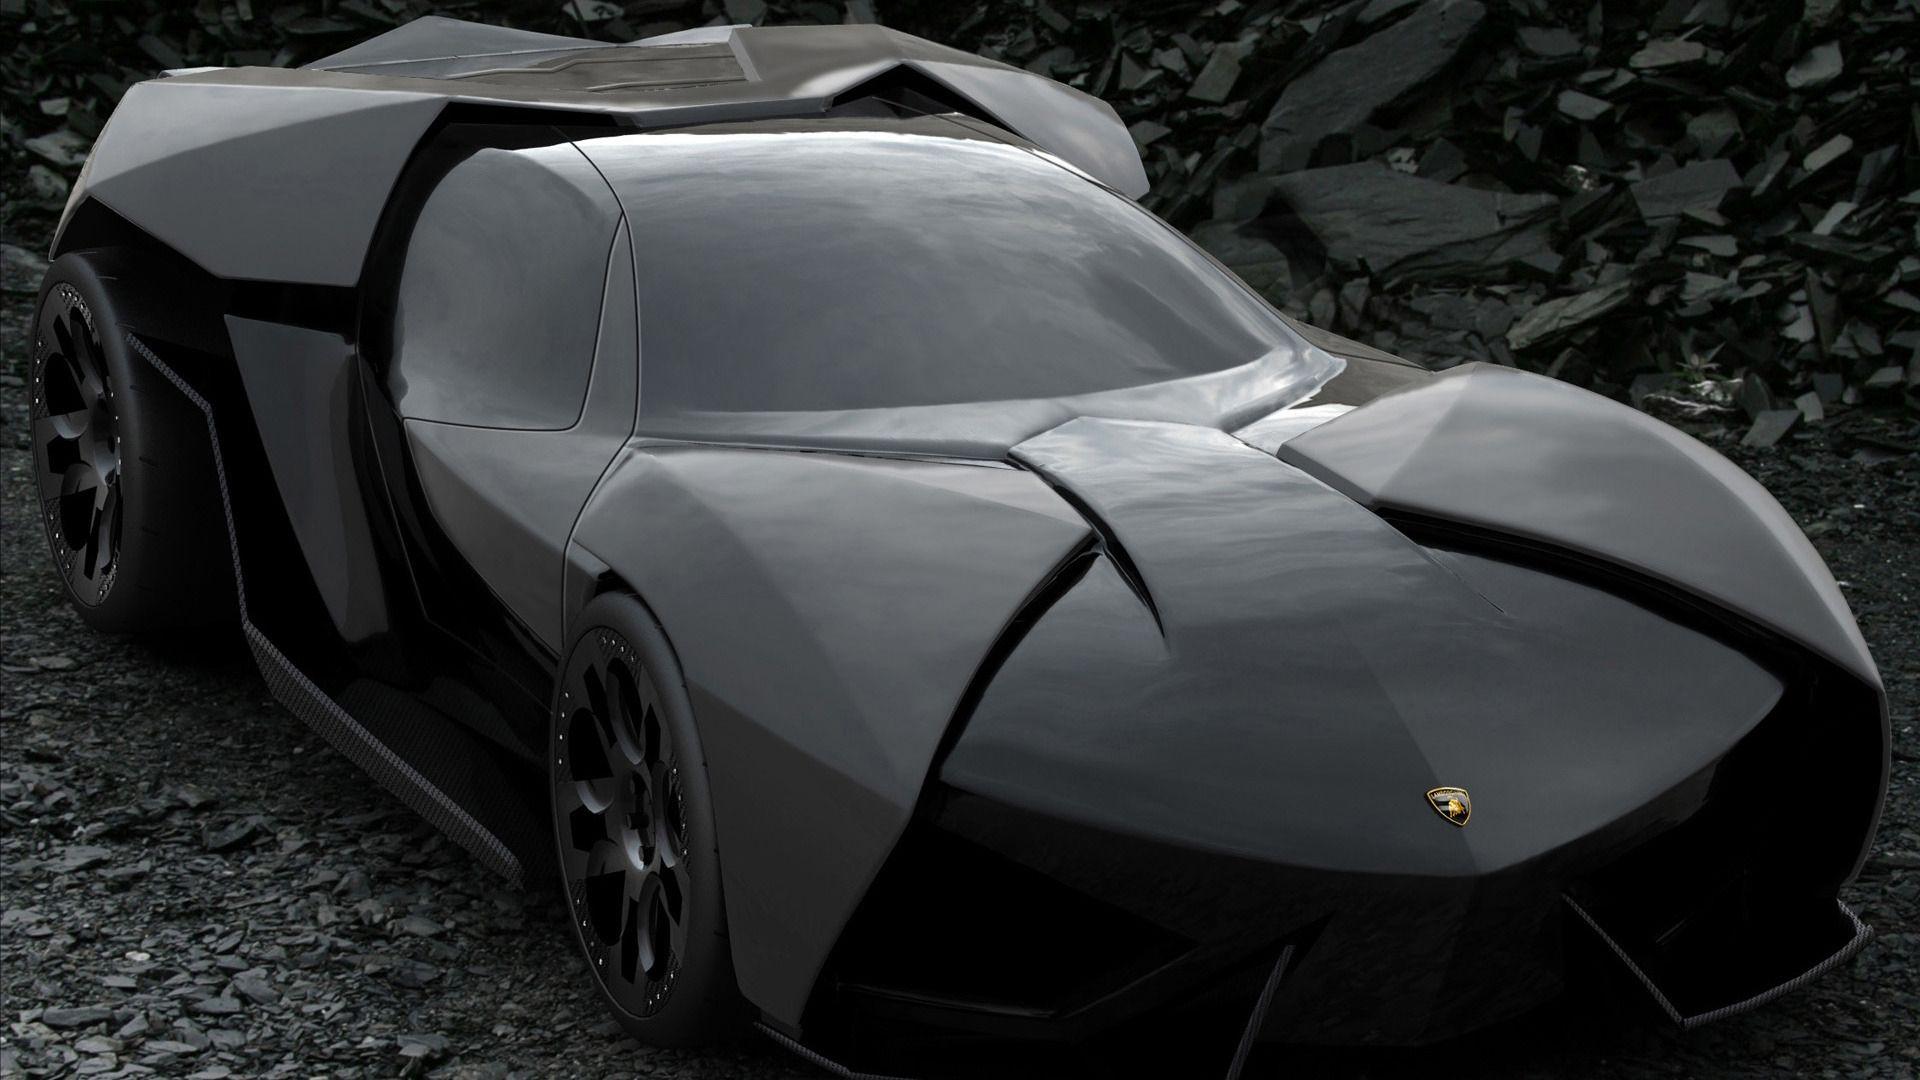 Batman Car Wallpaper Download